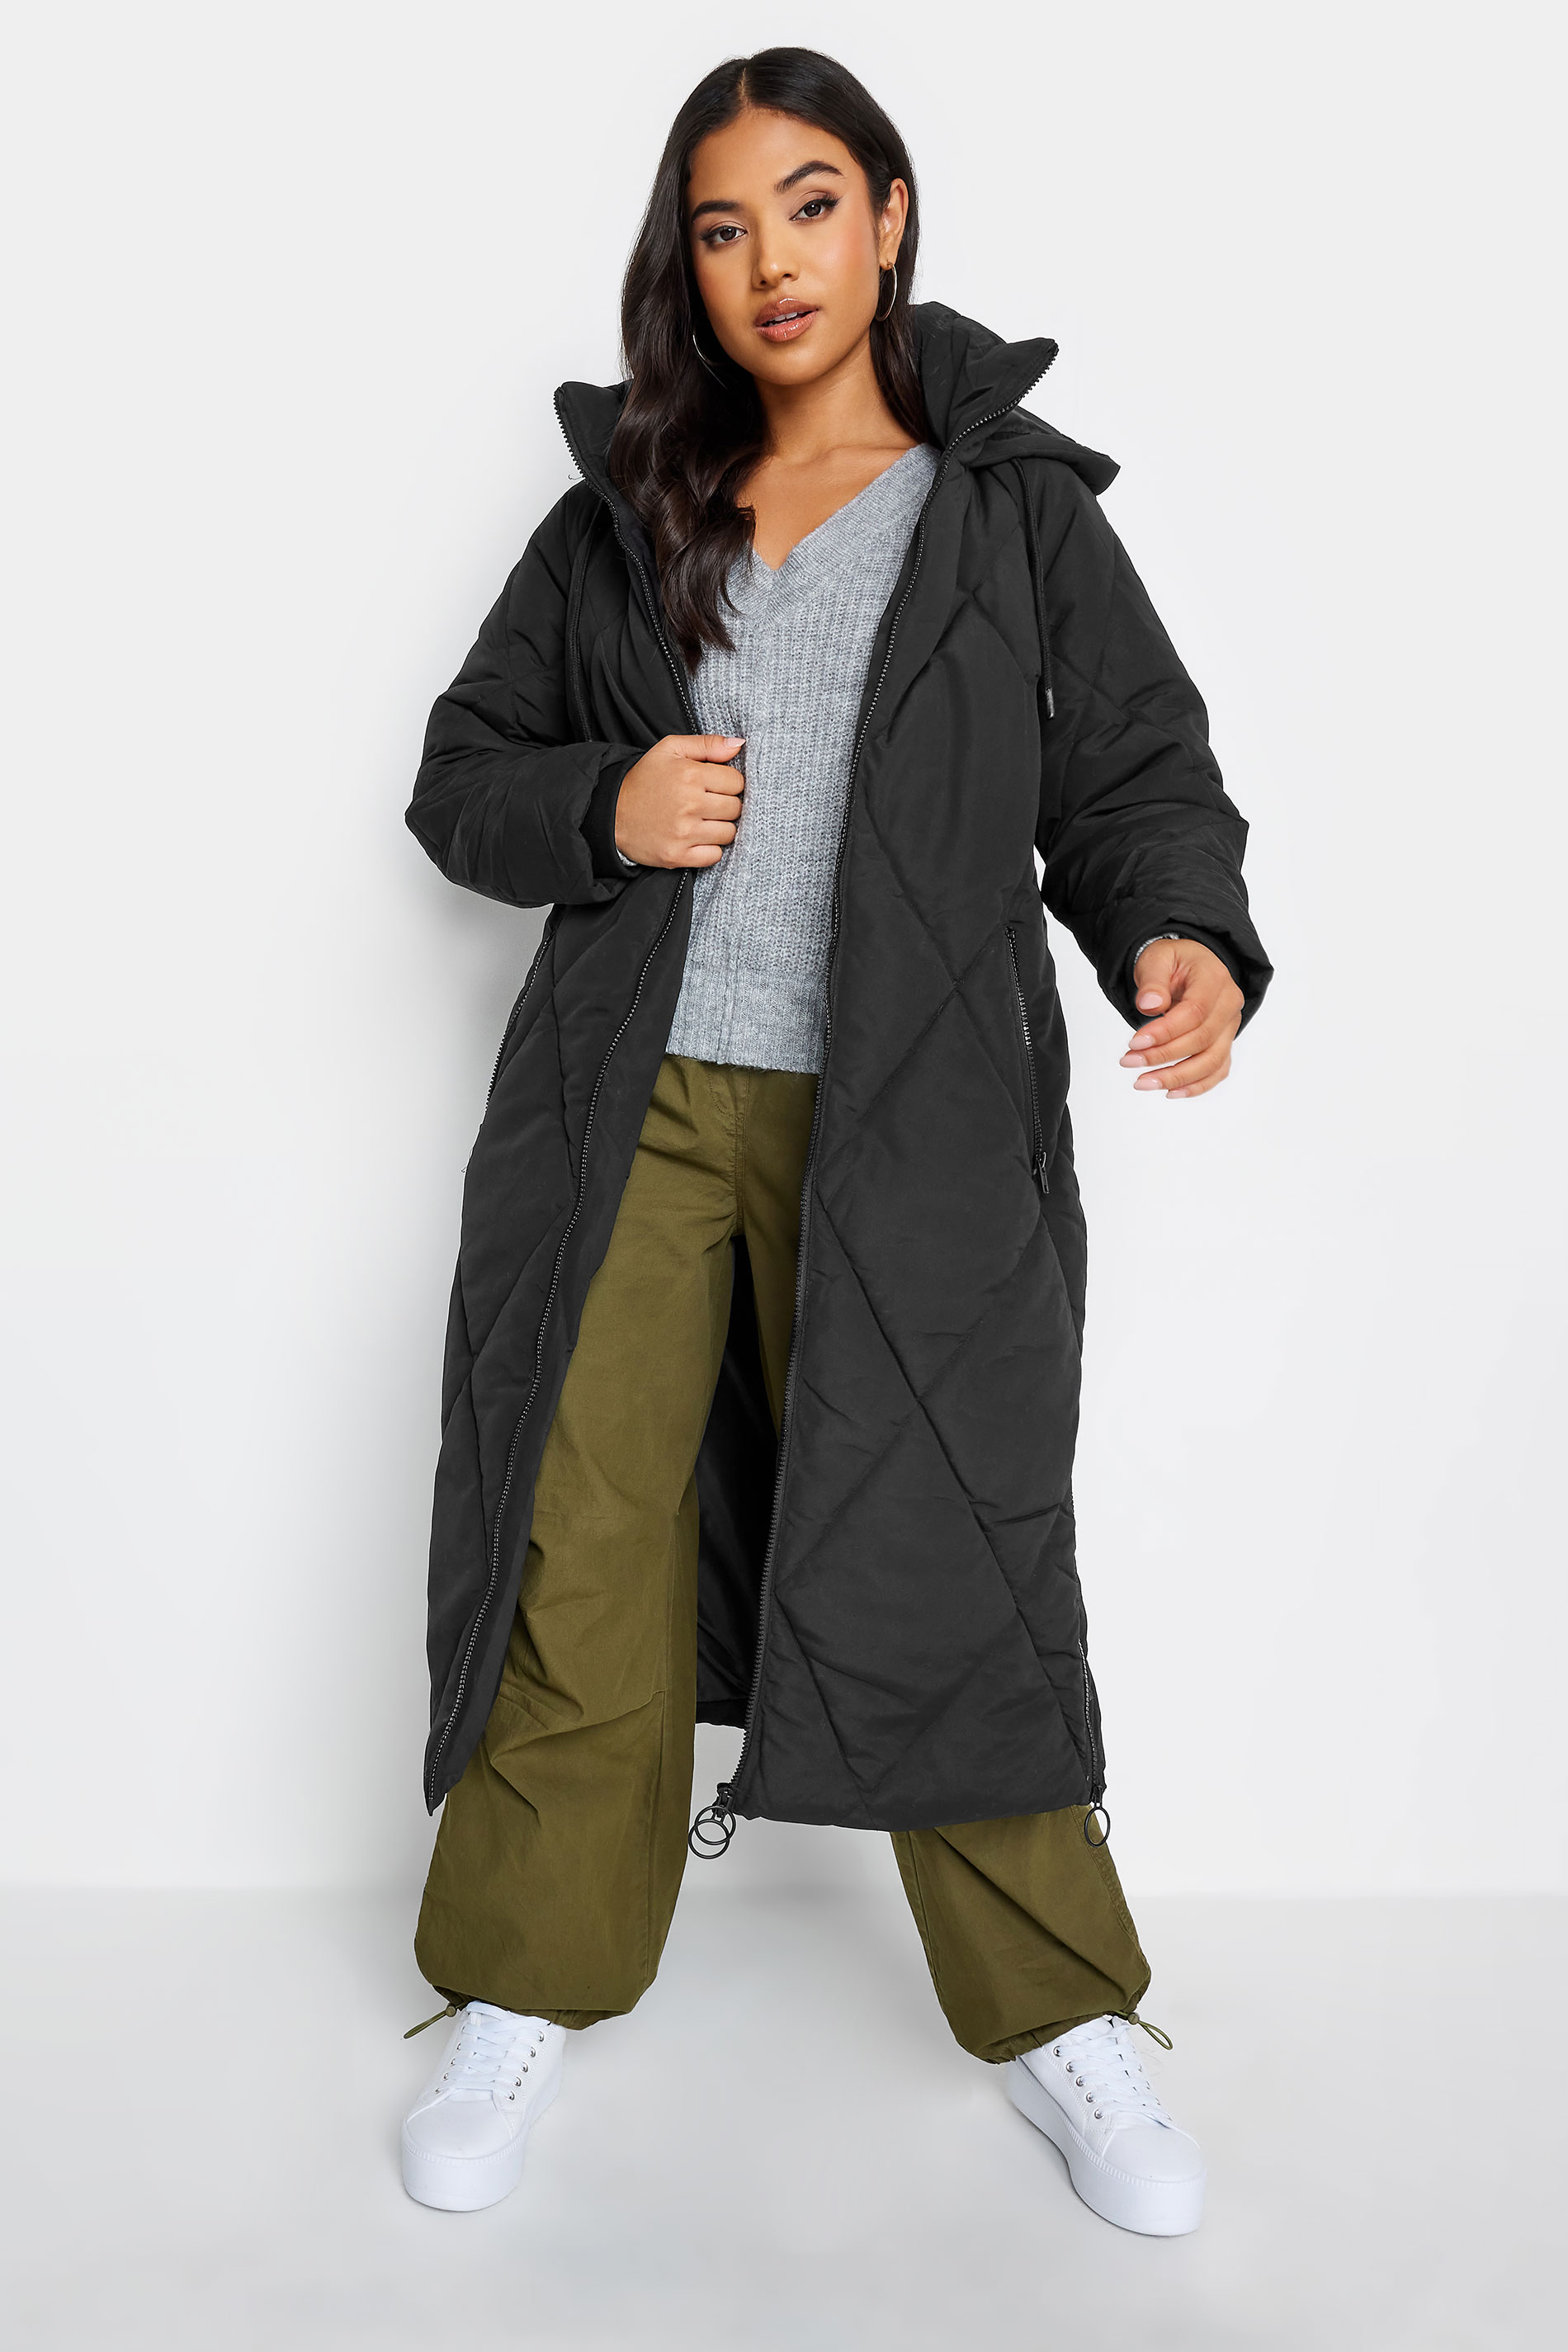 Pixiegirl Black Puffer Maxi Coat 14 Pixiegirl | Petite Women's Petite Coats